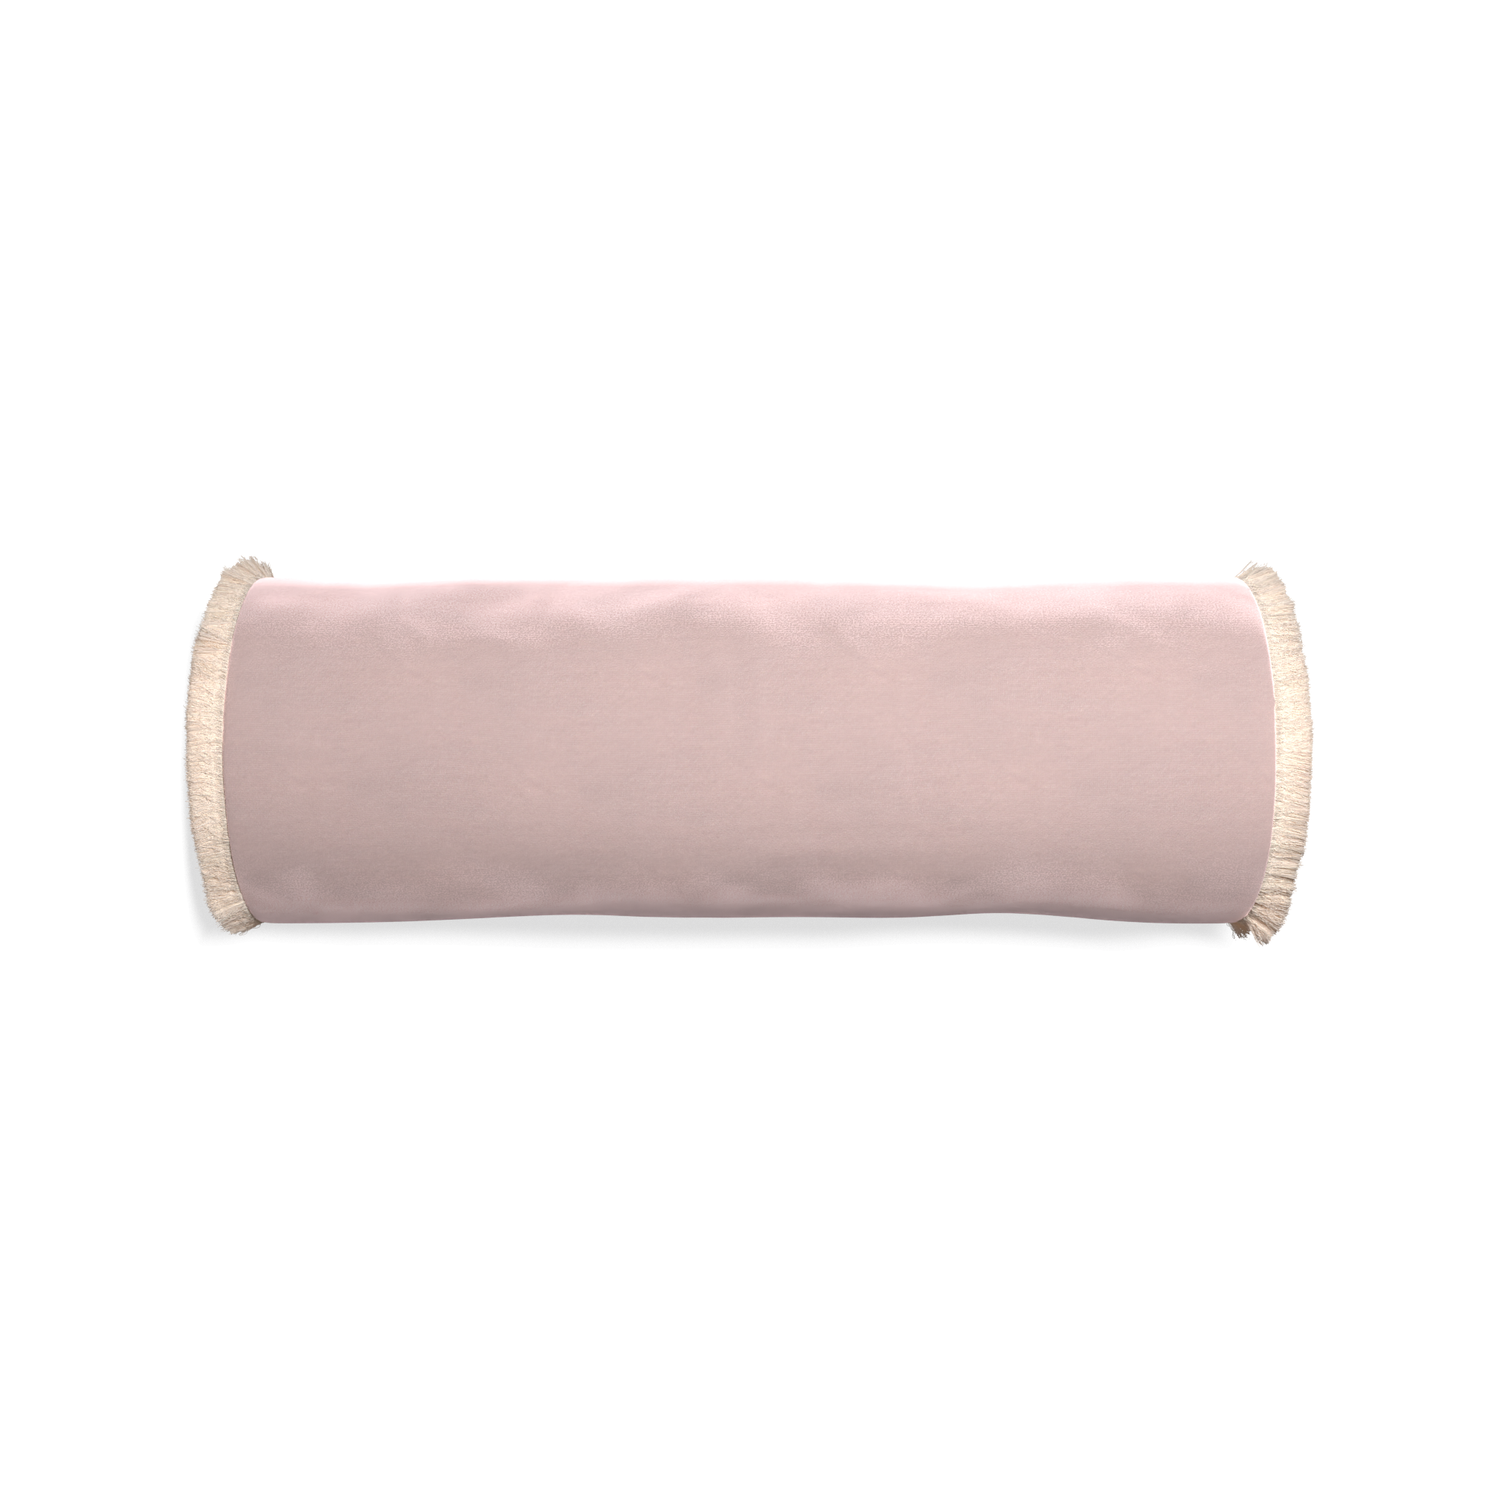 bolster light pink velvet pillow with cream fringe 